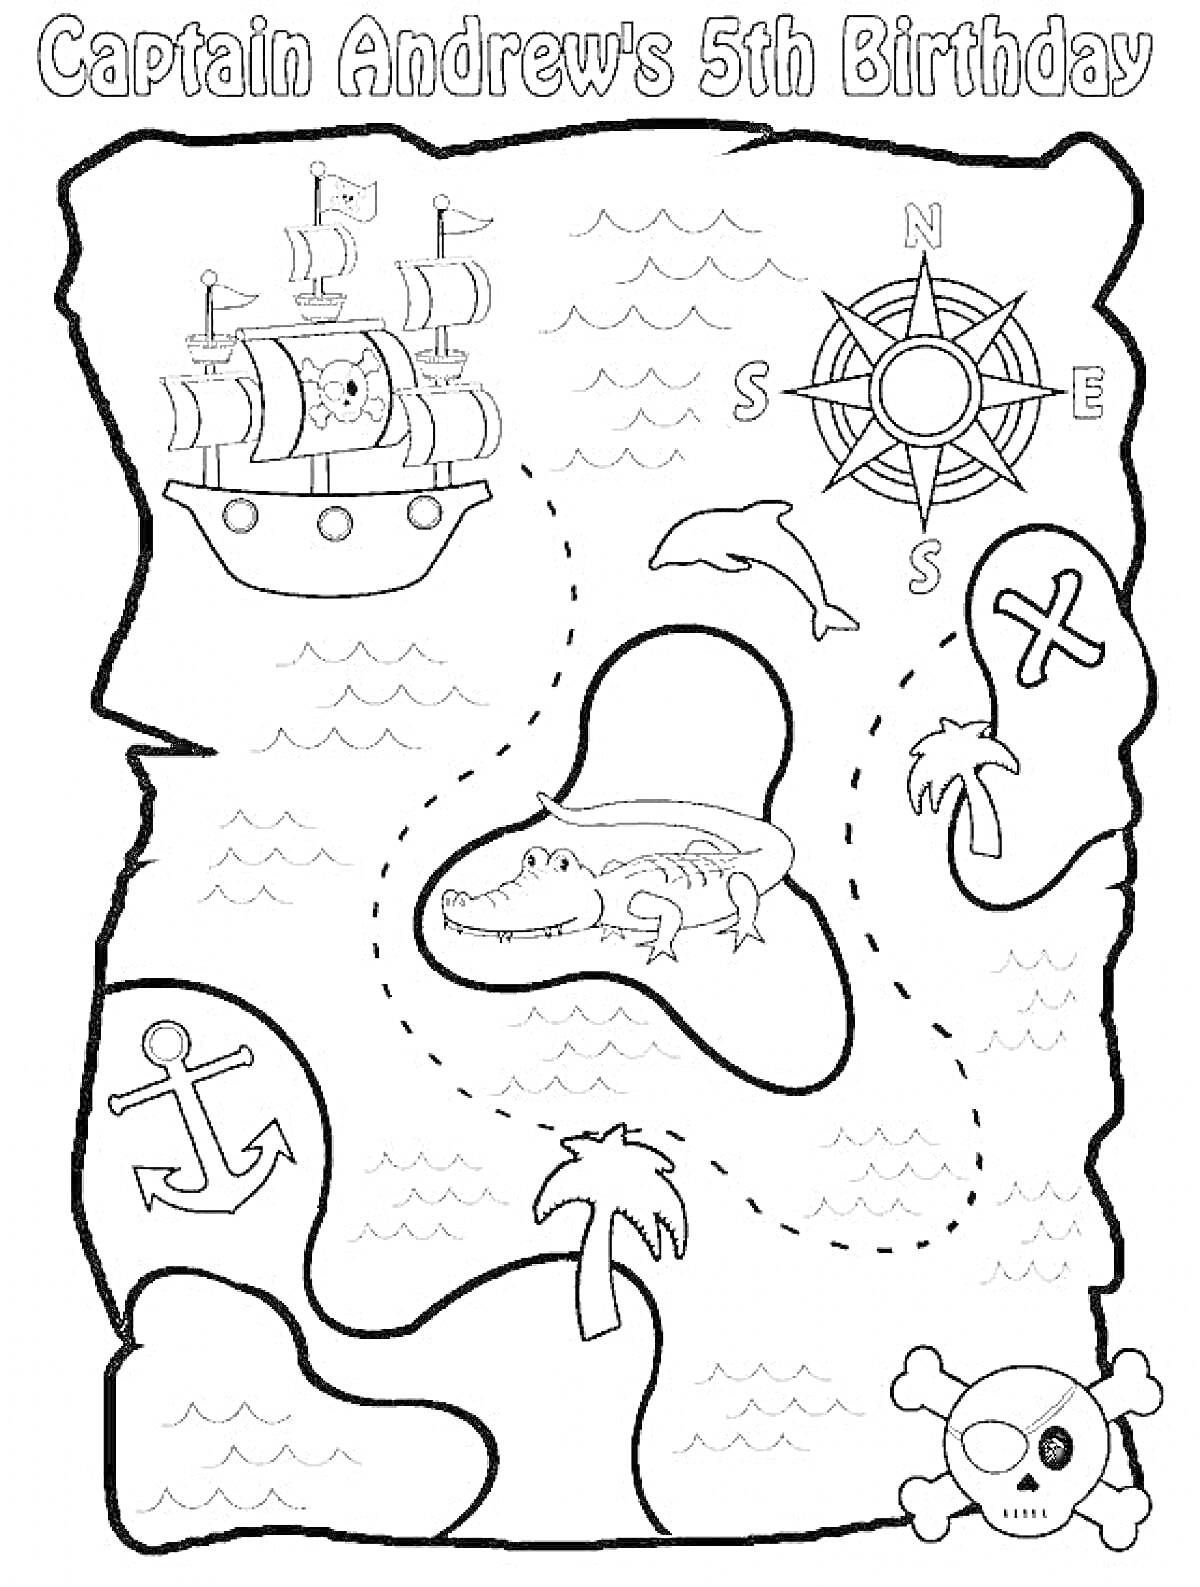 Раскраска Карта Сокровищ с кораблём, компасом, дельфином, аллигатором на острове, крестом, якорем, пальмой и черепом с костями